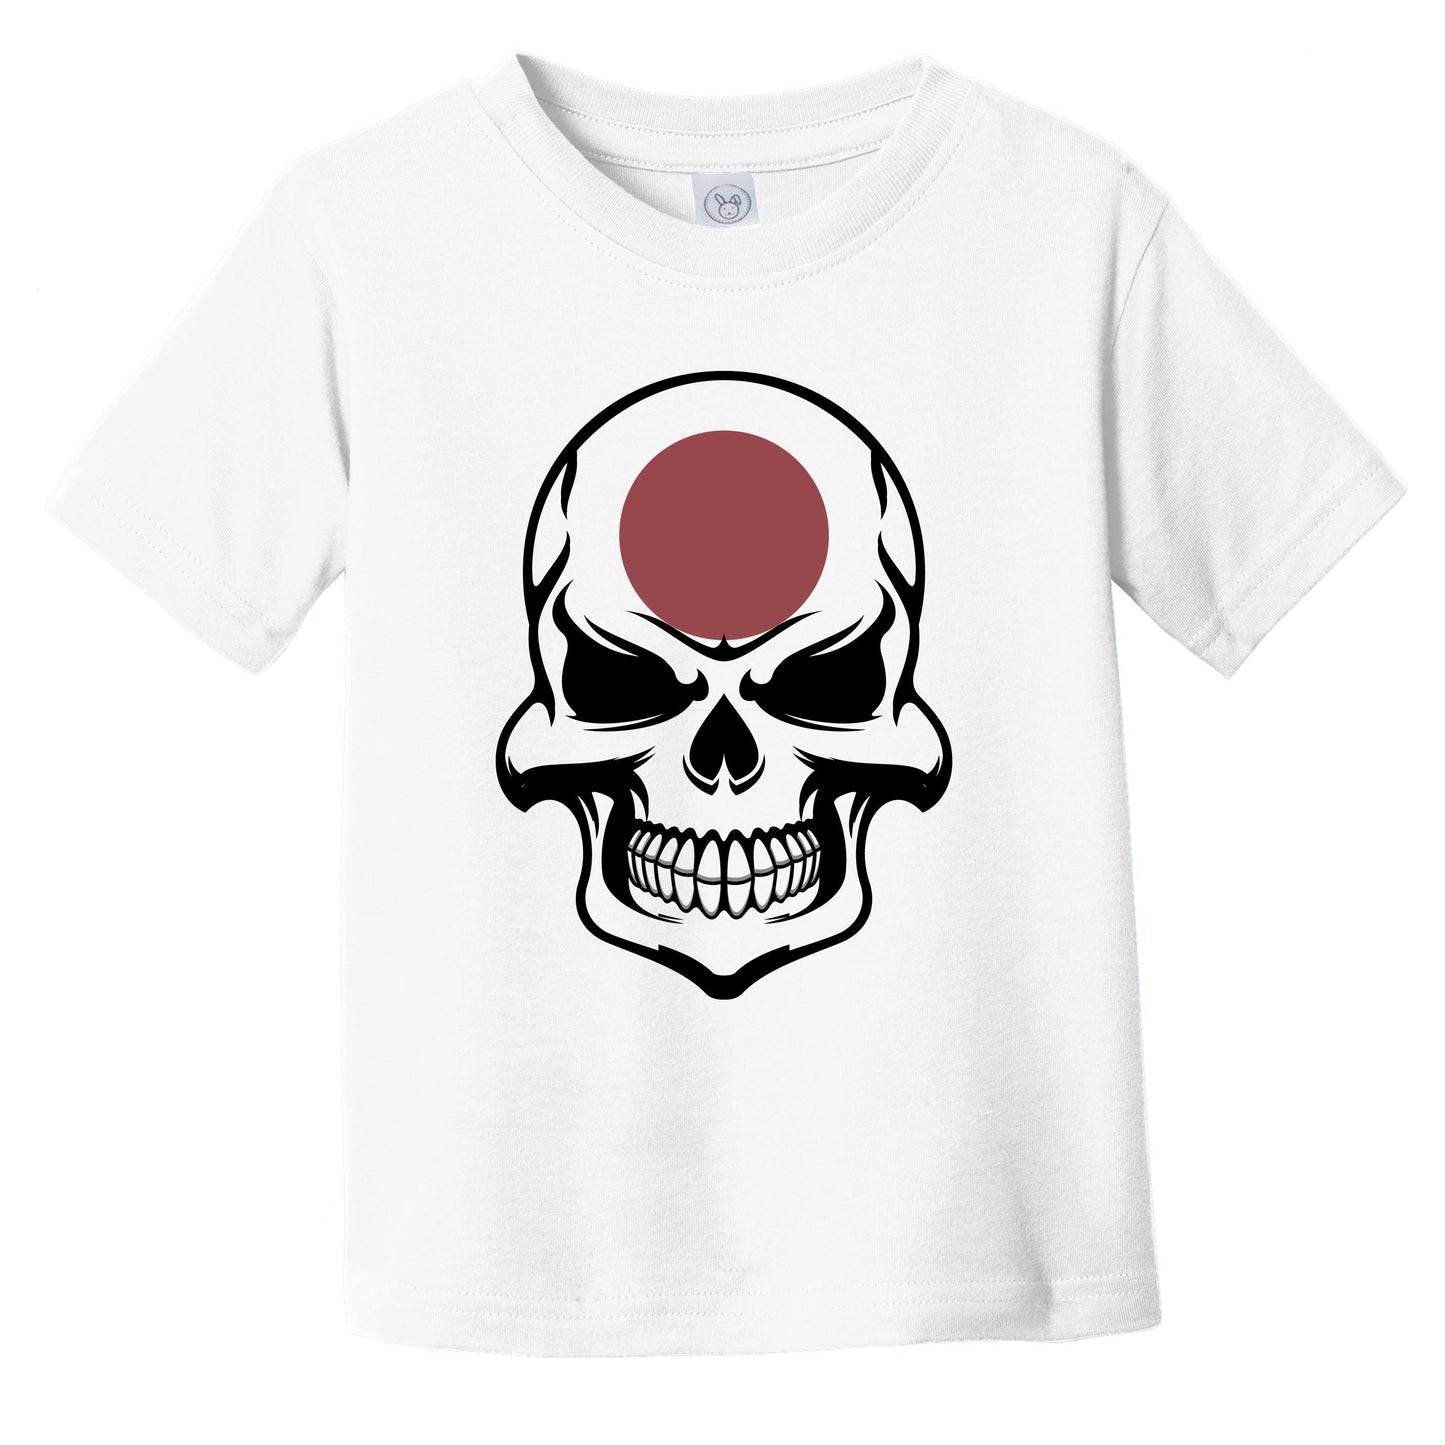 Japanese Flag Skull Cool Japan Skull Infant Toddler T-Shirt